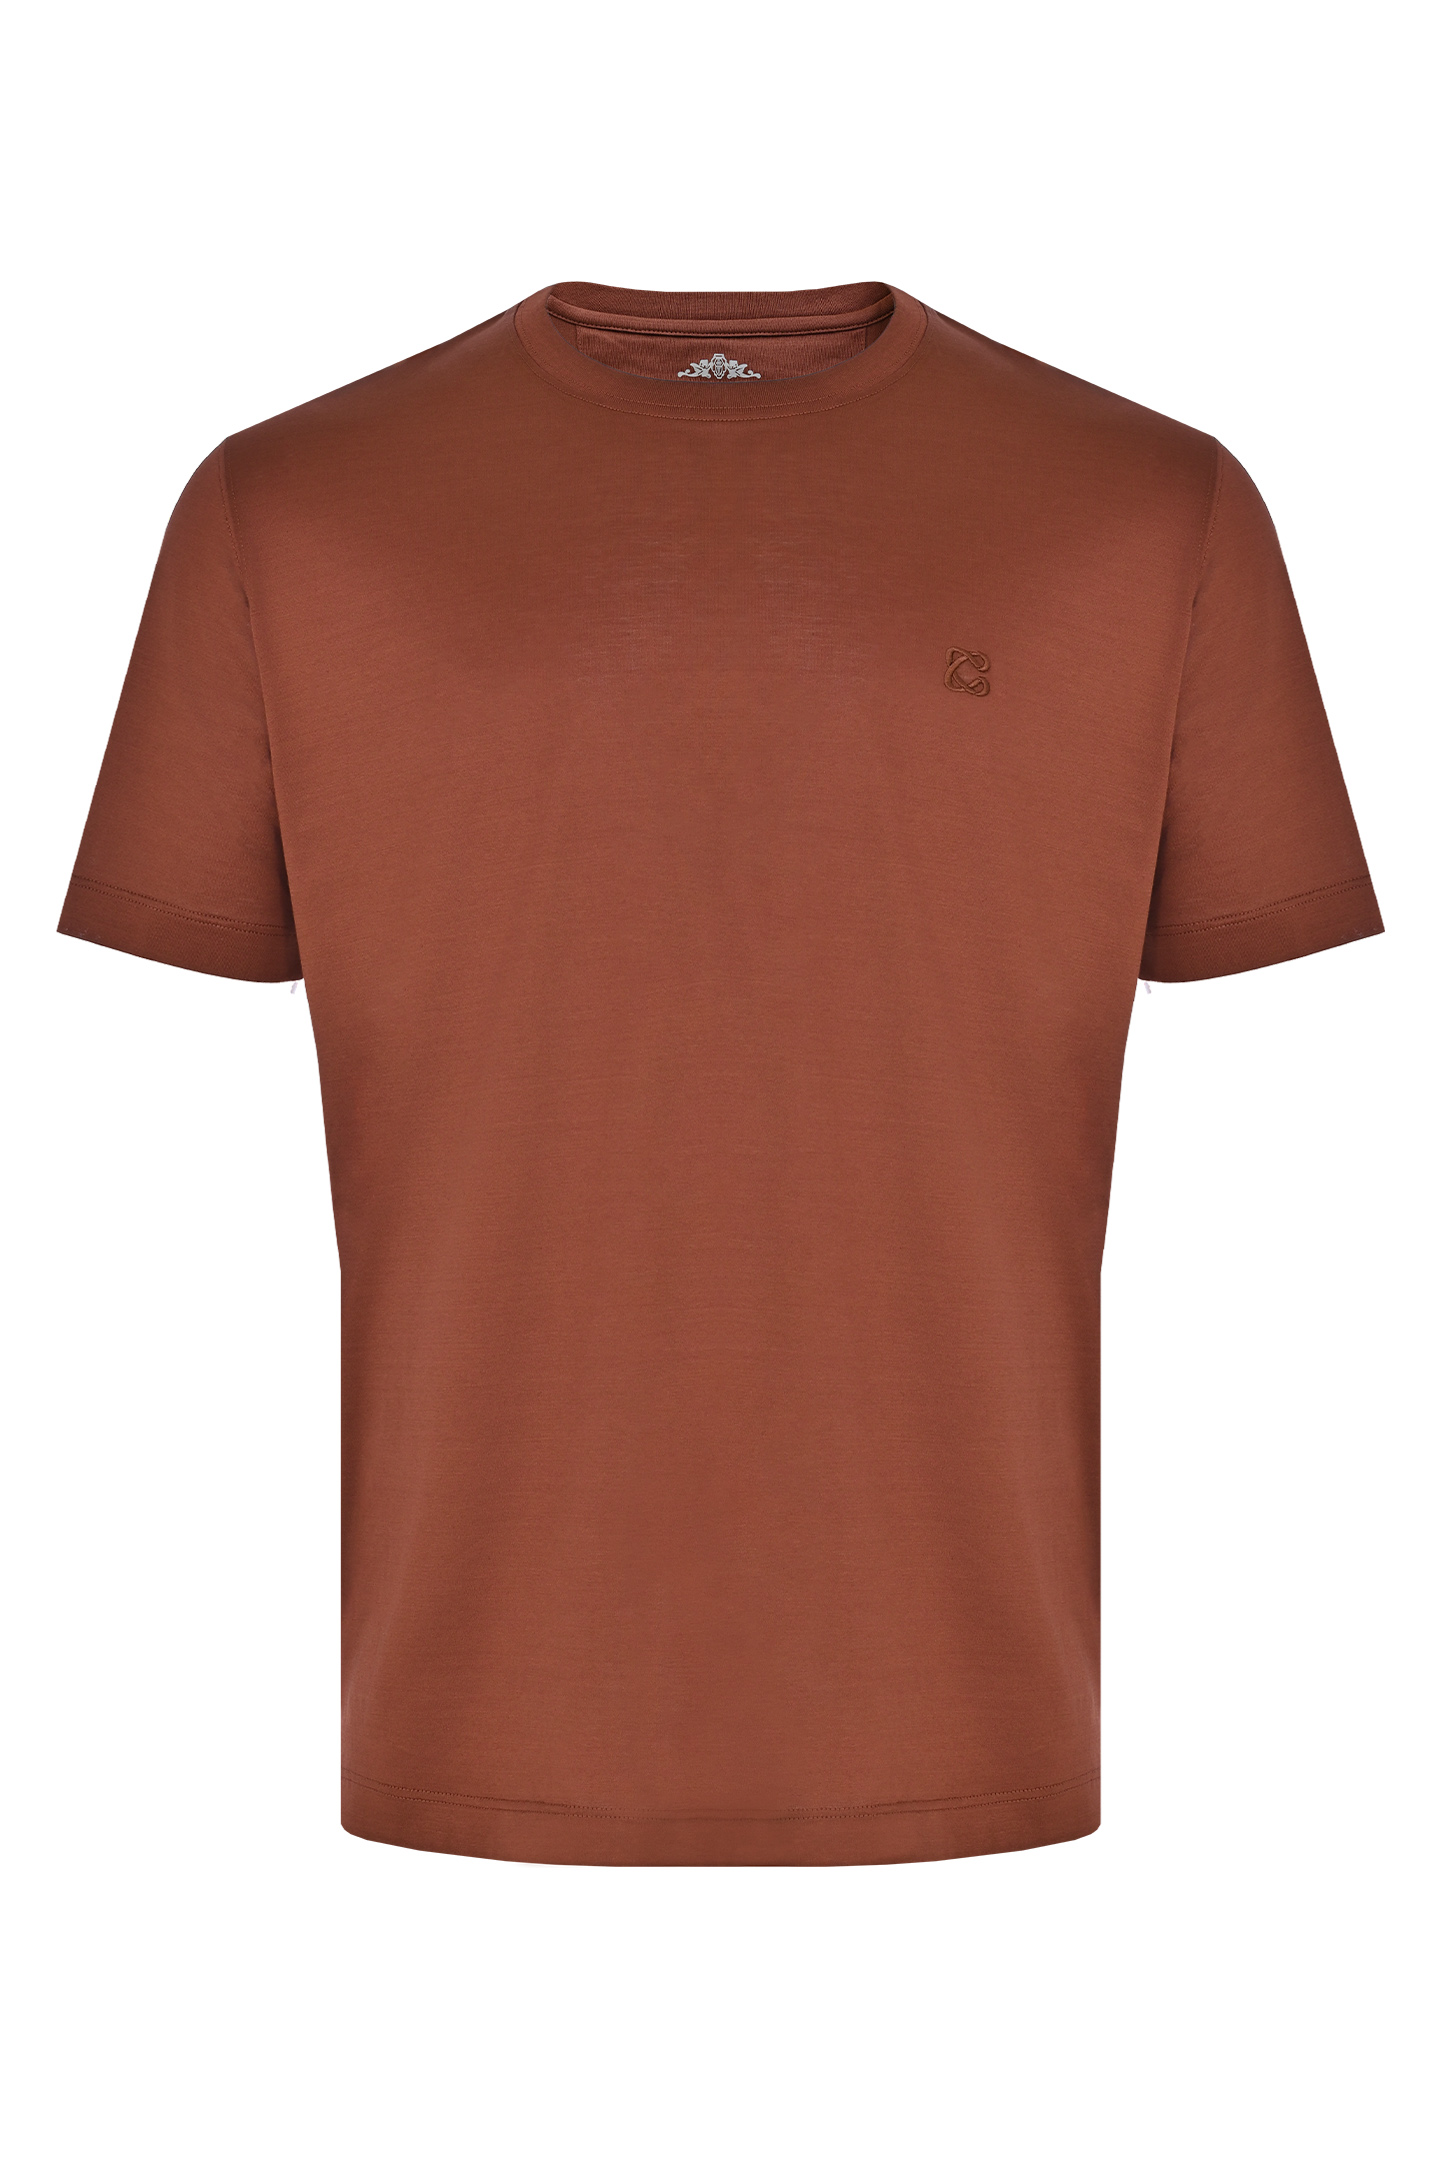 Базовая хлопковая футболка CASTANGIA DM66, цвет: Коричневый, Мужской